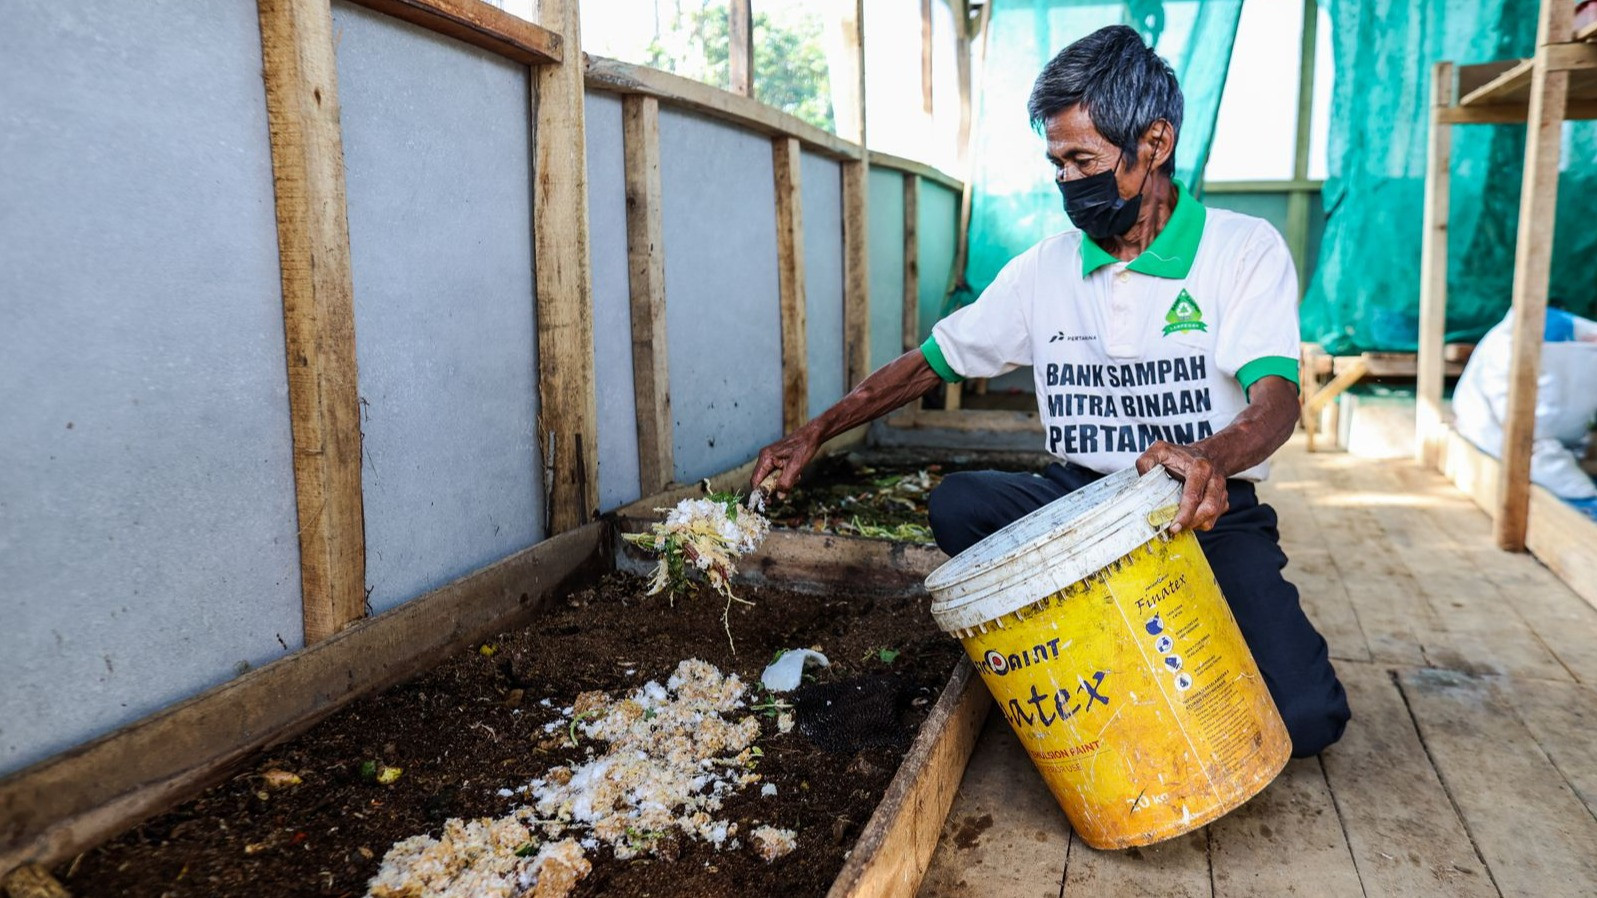 PT Pertamina (Persero) terus memperkuat komitmennya dalam mendukung upaya pemerintah menanggulangi sampah melalui program Sampah Kita.